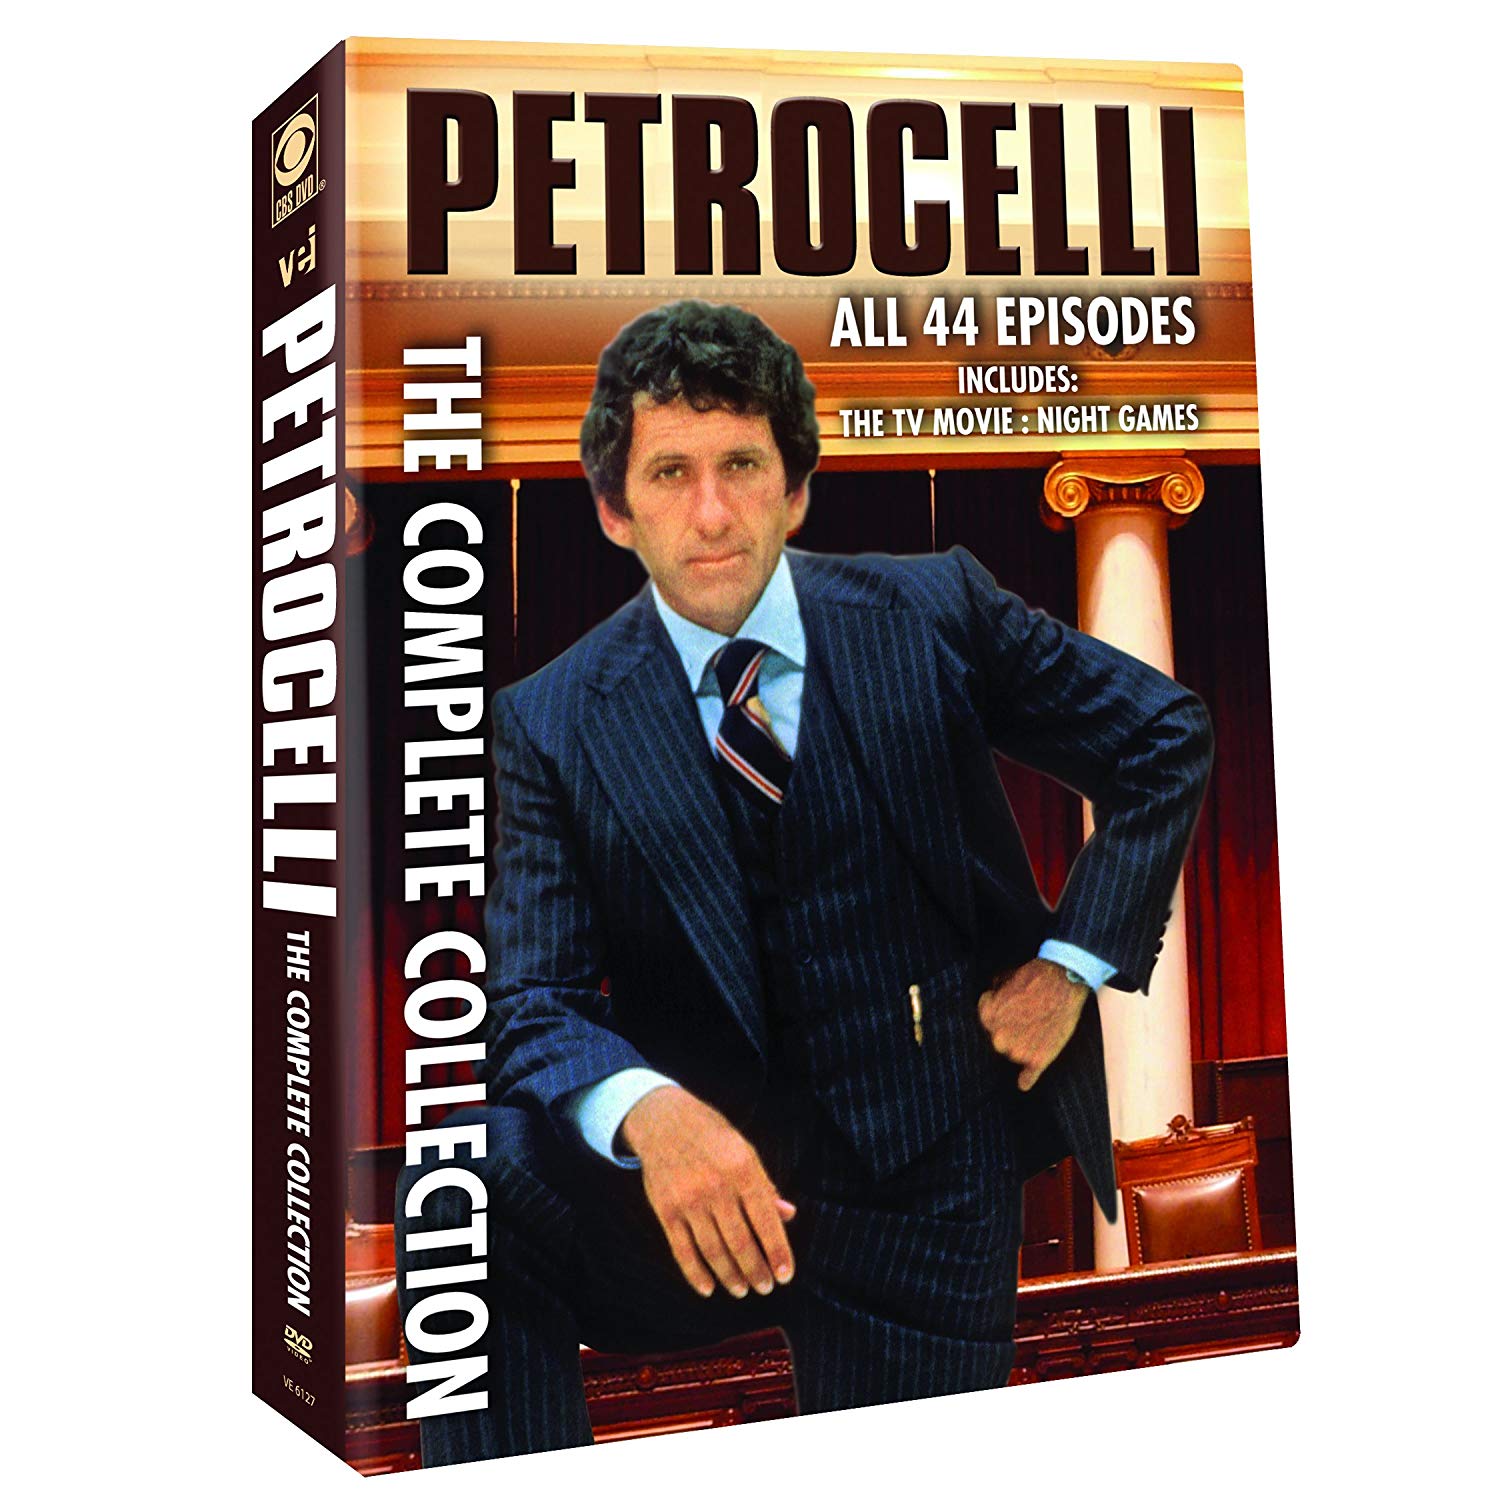 Ünlü Avukat Petrocelli’nin Kariyerinde Kaybettiği Tek Dava